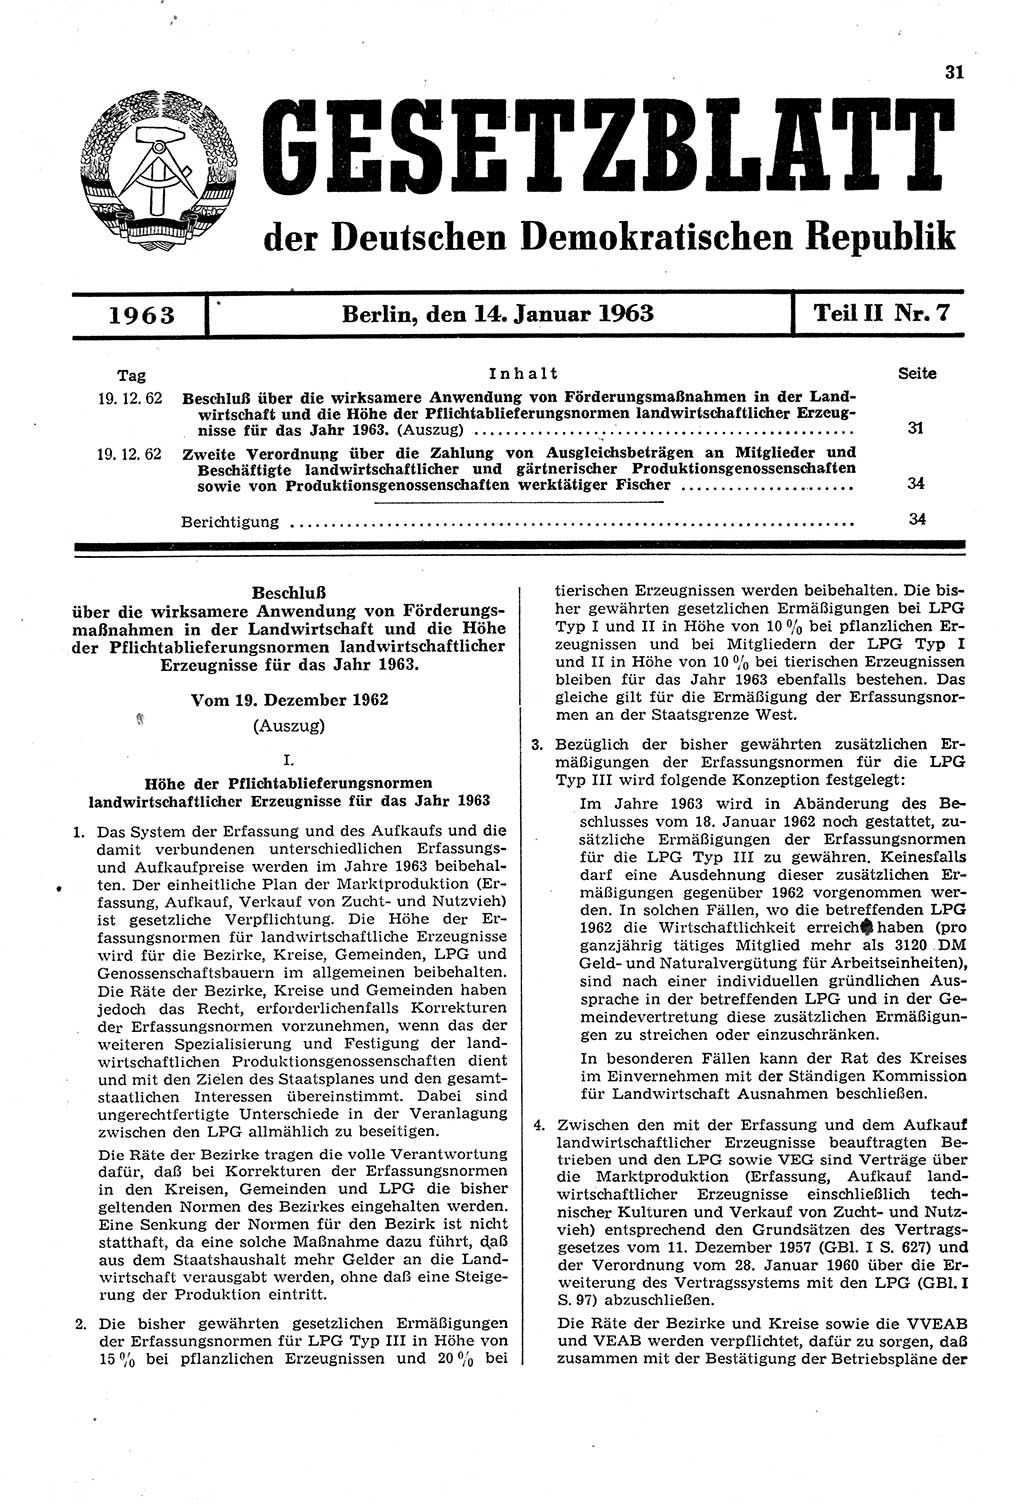 Gesetzblatt (GBl.) der Deutschen Demokratischen Republik (DDR) Teil ⅠⅠ 1963, Seite 31 (GBl. DDR ⅠⅠ 1963, S. 31)